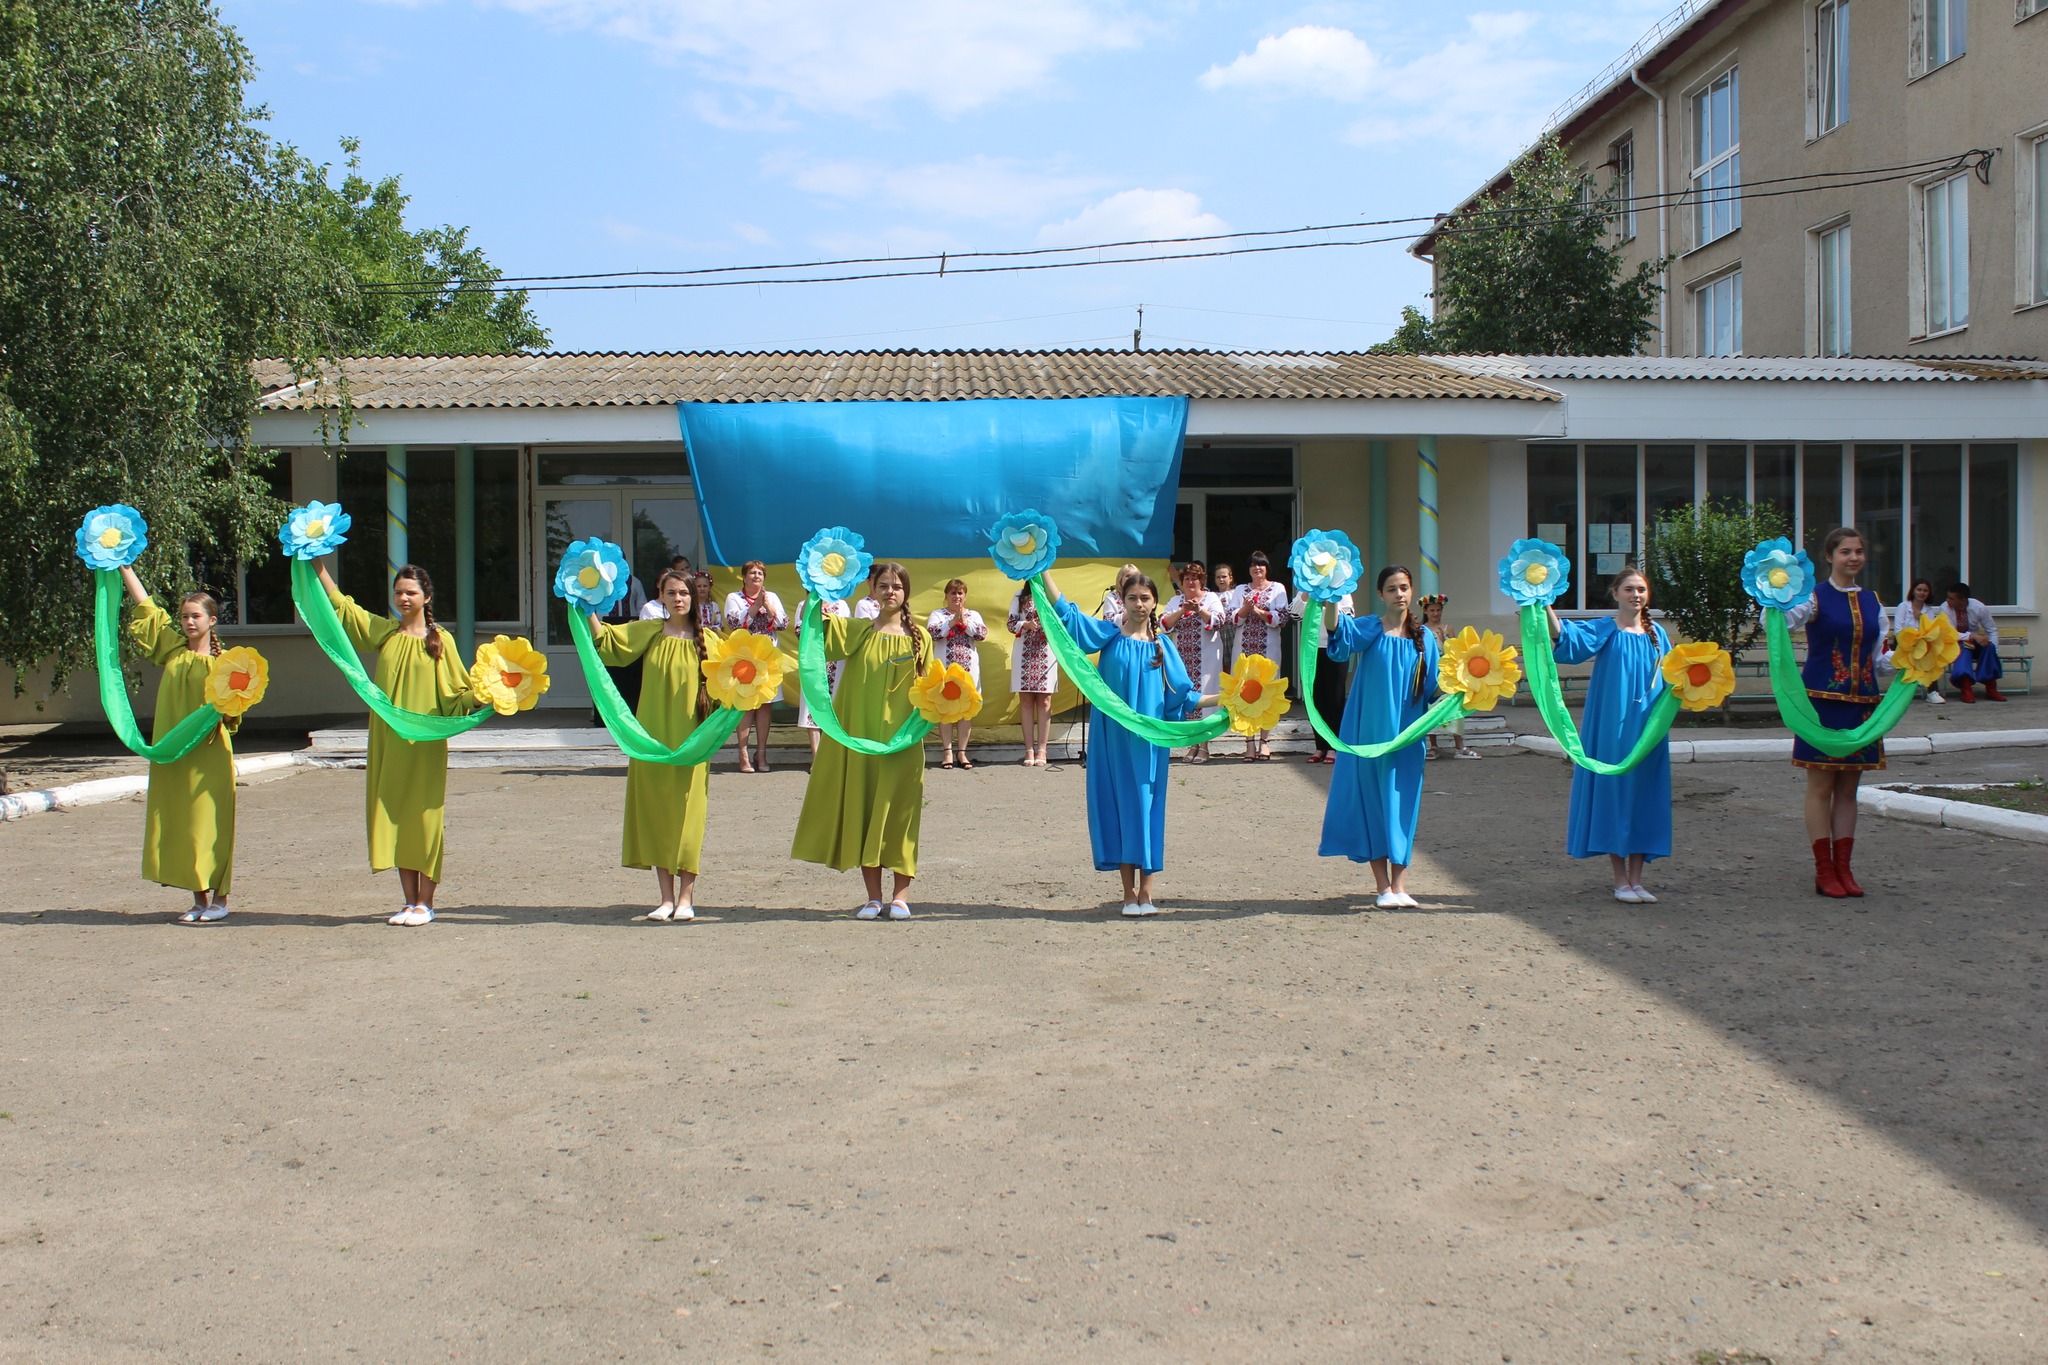 С песнями, плясками и театральным действом открыли очередной «Класс безопасности» в Сафьяновской общине.